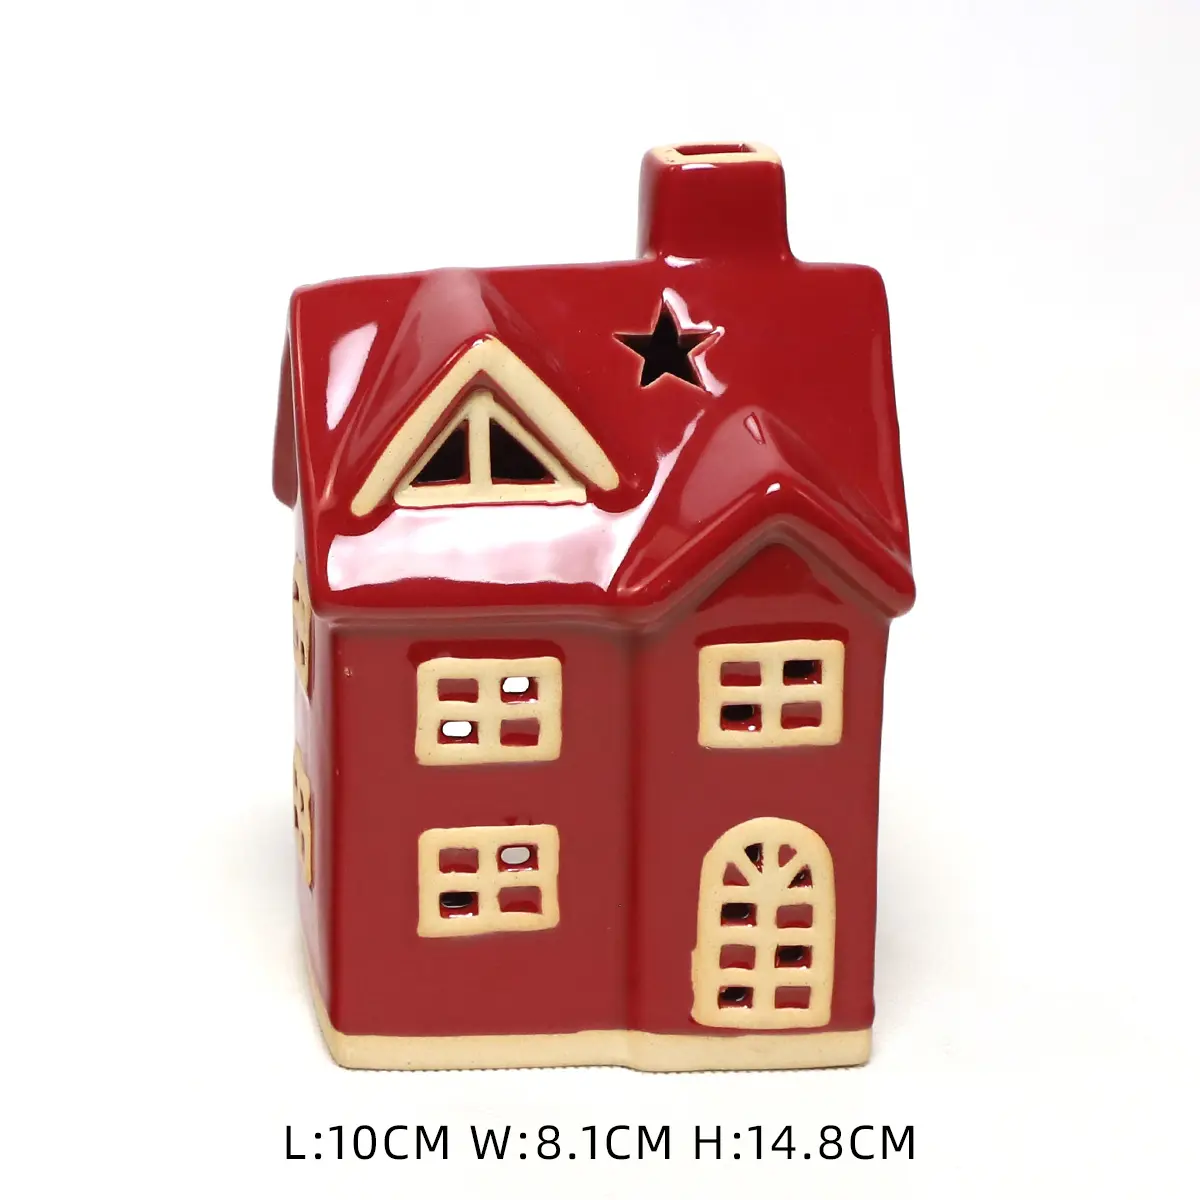 Vila de porcelana vermelha vela votiva Atacado Cerâmica igreja Casa Tealight Holder Natal presente para venda